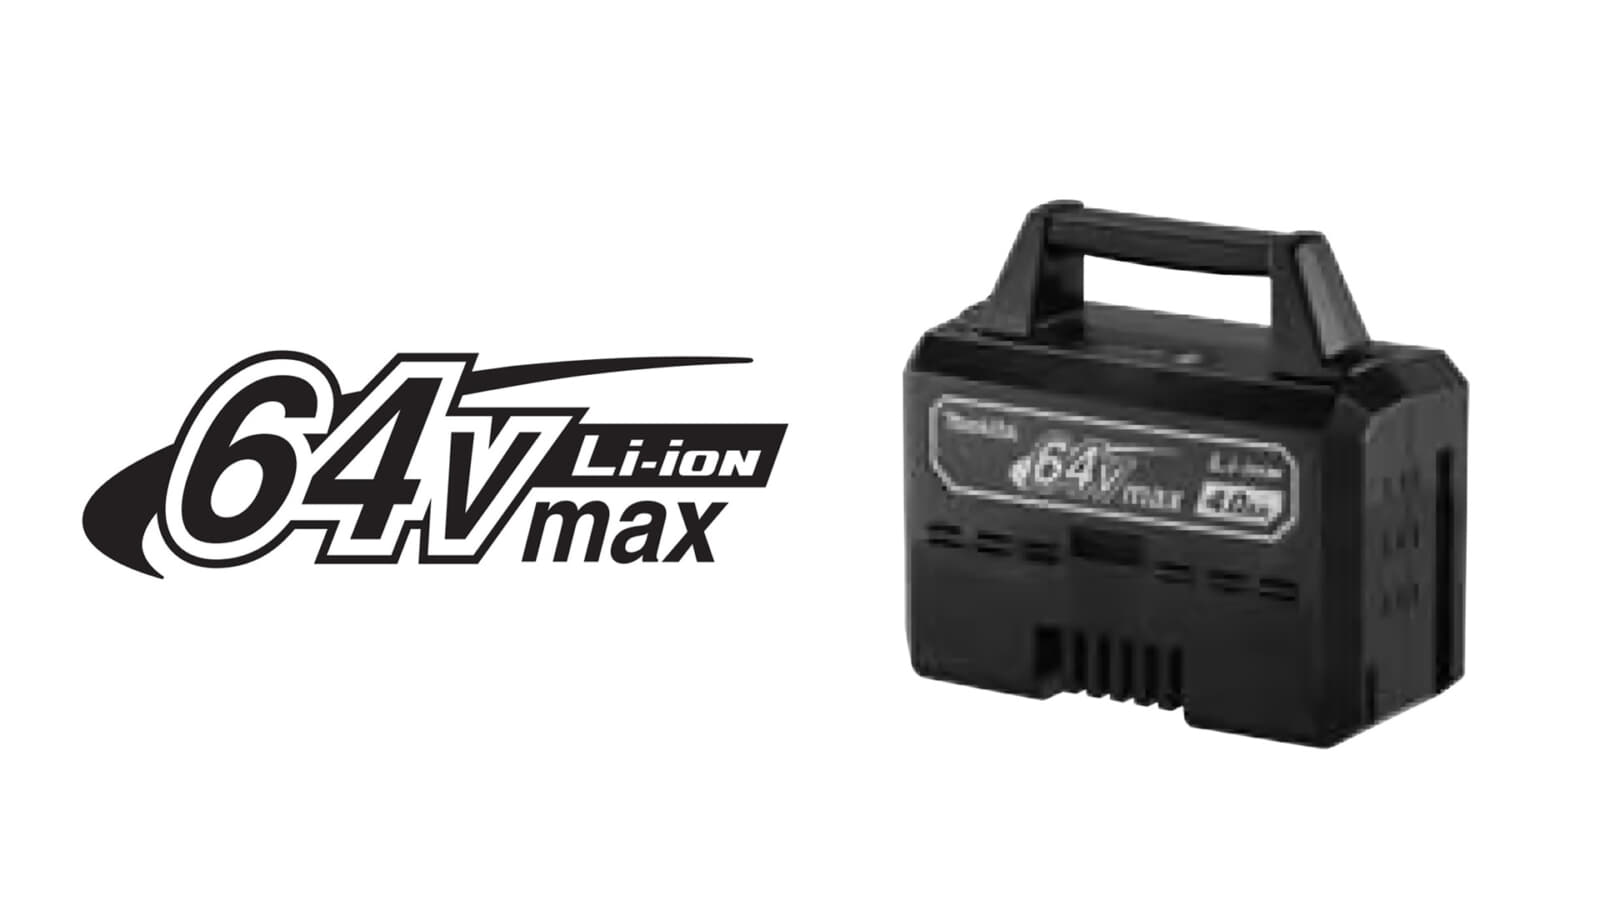 Makita 64Vmaxを正式発表、取手付きの大型バッテリーBL6440を投入